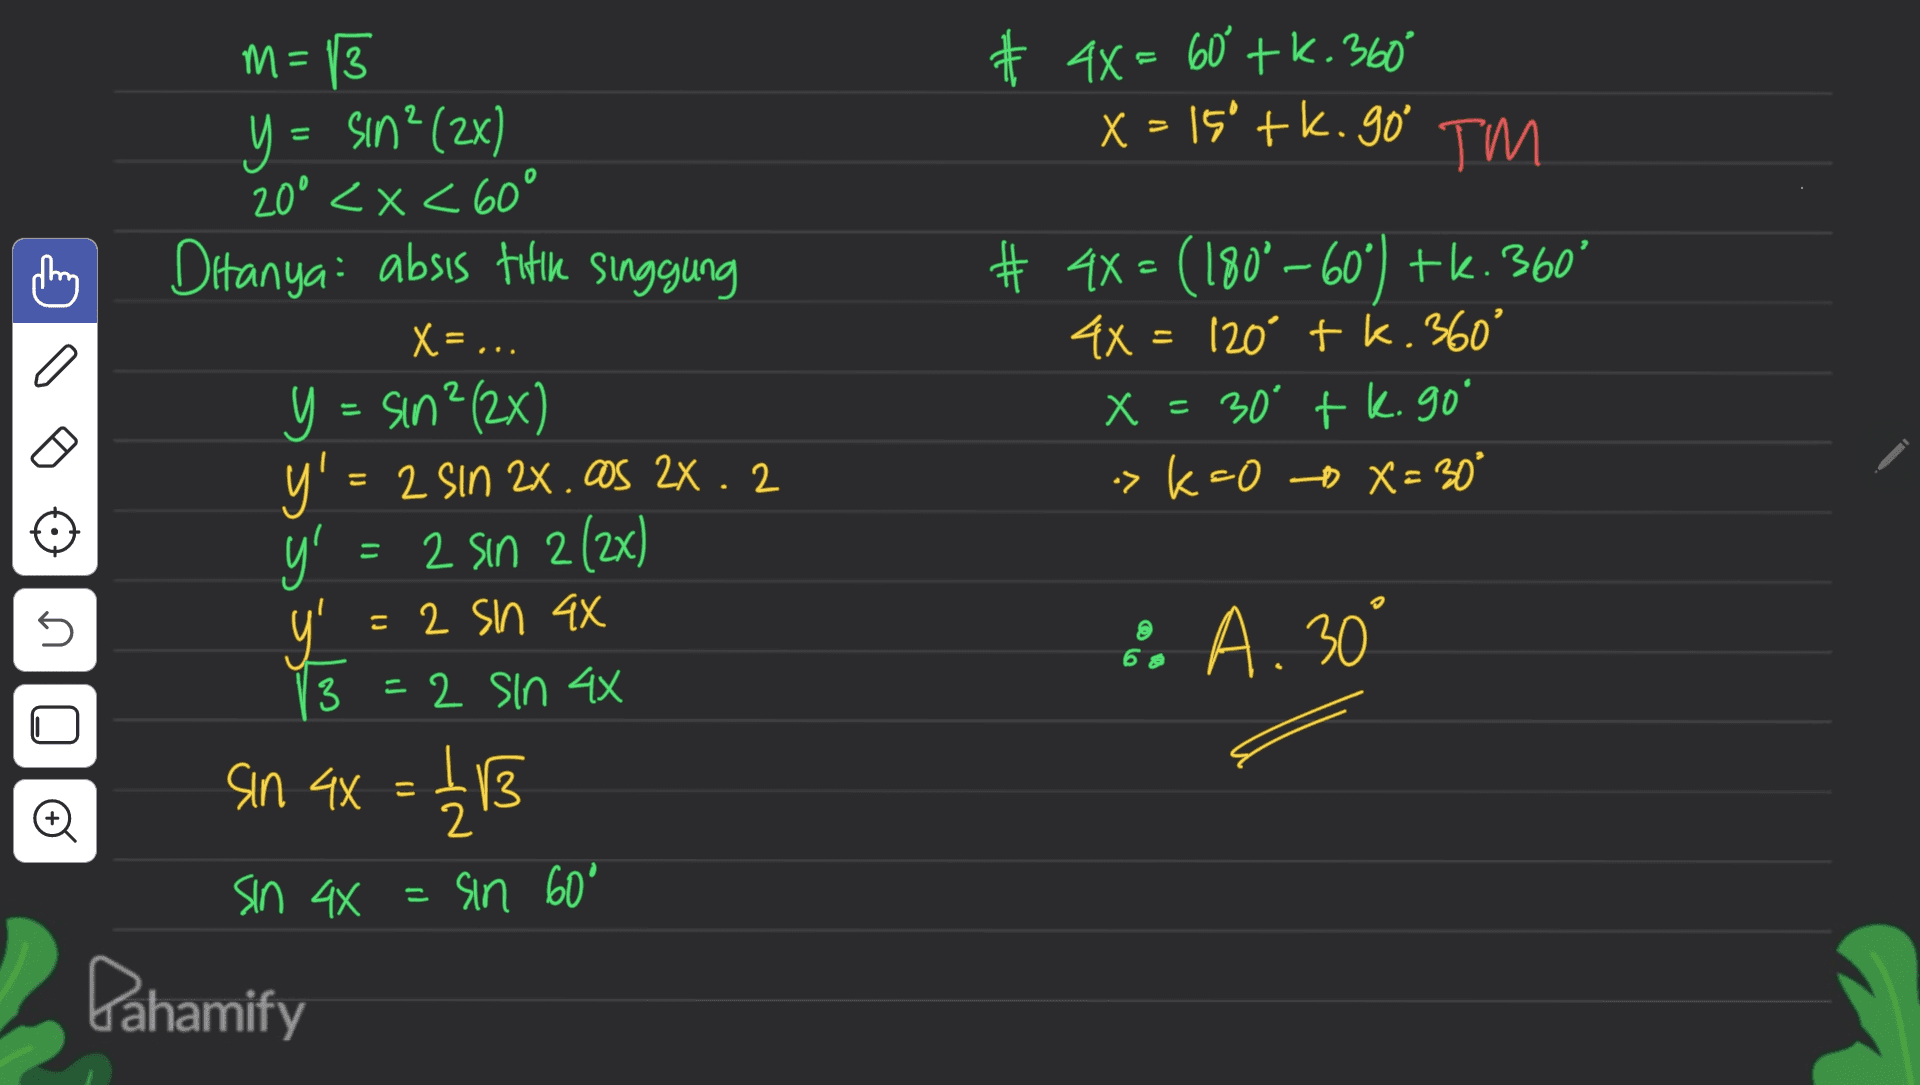 # 4x = 60° +K.360° x=150 tk. go' TM o # 4x = (180°—60°) tk. 360° 4X= 120 tk. 360° X = 30 tk. go x ' >k=0 X= 30° = m= 13 Y = sin? (2x) 20° <x< 60° Ditanya: absis tittke Singgung X= ... y = sin ? (2x) Y' = 2 sin 2x.os 2x. 2 y = 2 sin 2 (2x) 보 = 2 sin 4x =2 sin 4x sin ax = 12 13 sin 44 = sin 60° Dahamify 5 :. A. 30° 3 © 